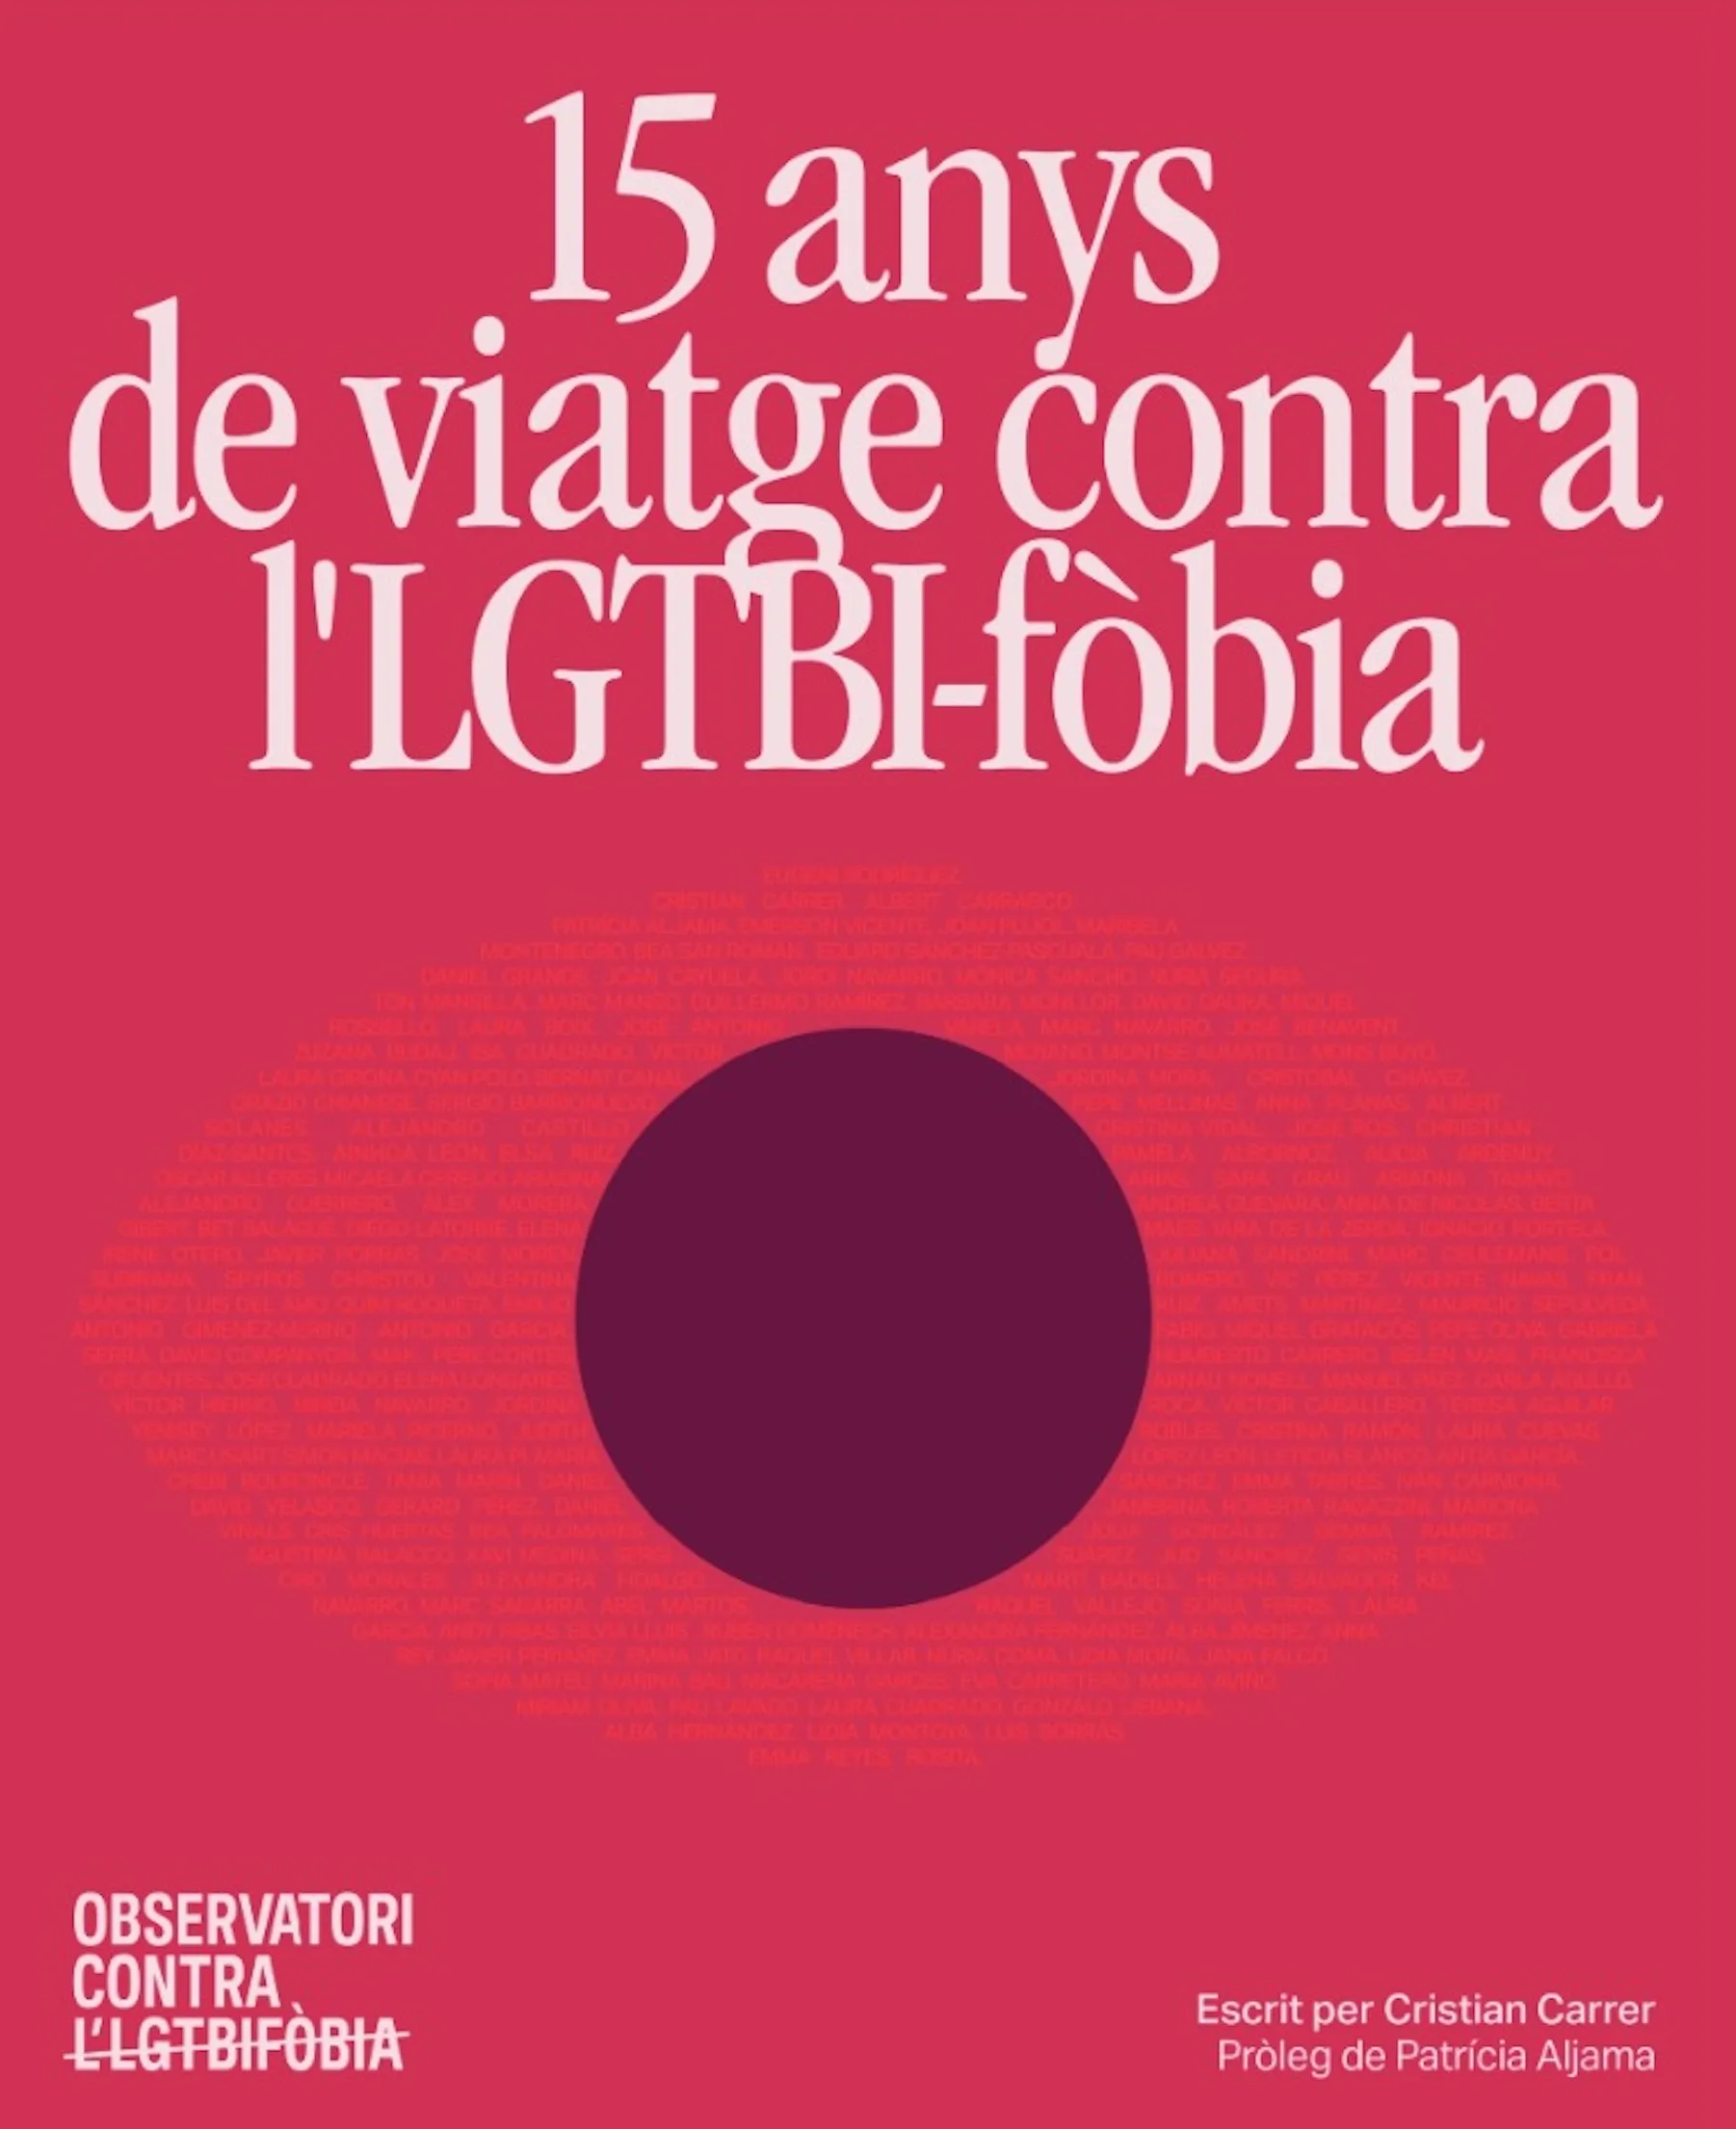 L'Observatori Contra l'Homofòbia fa 15 anys